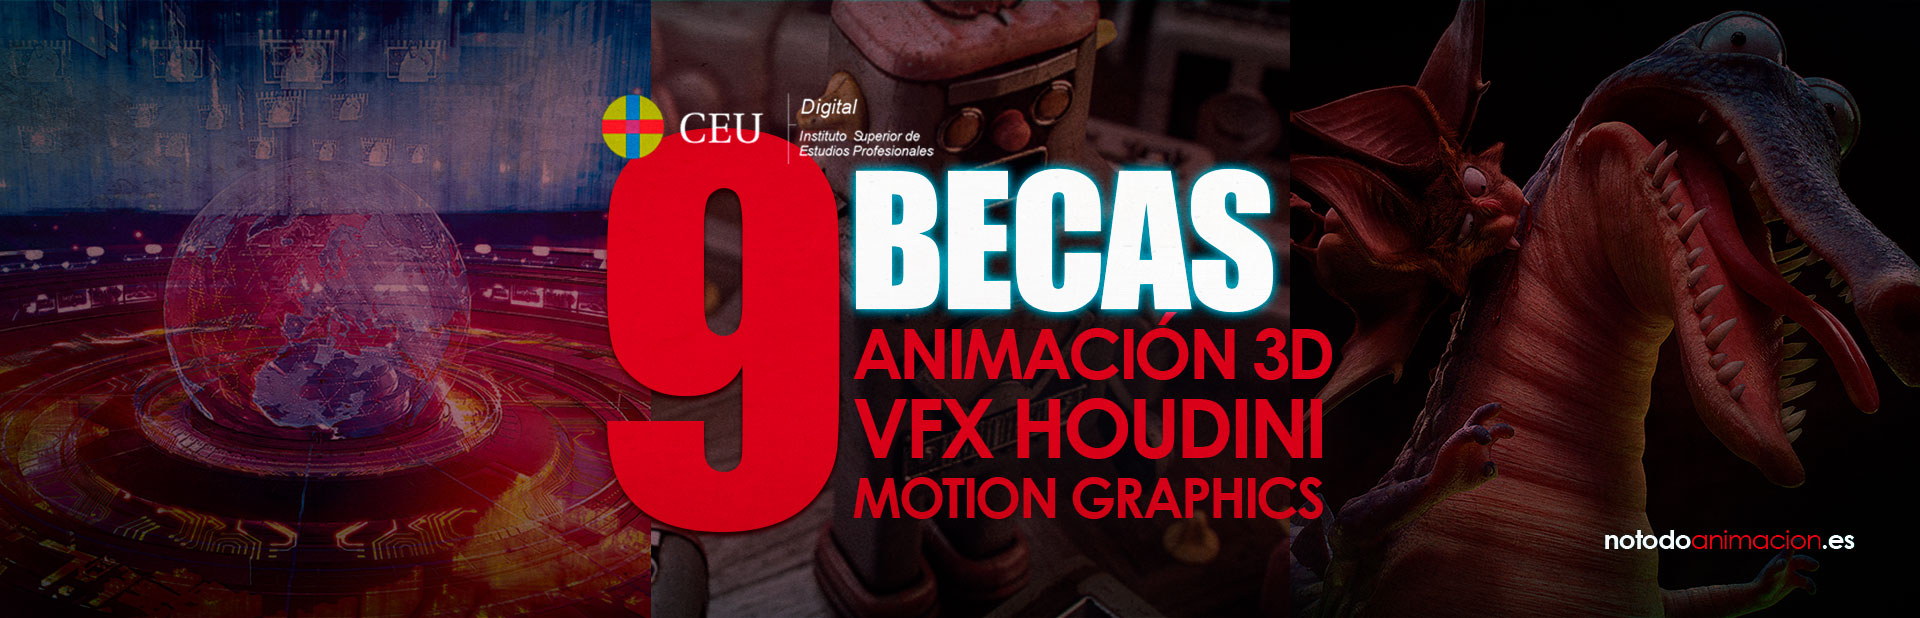 becas para estudiar animacion 3d vfx motion graphics